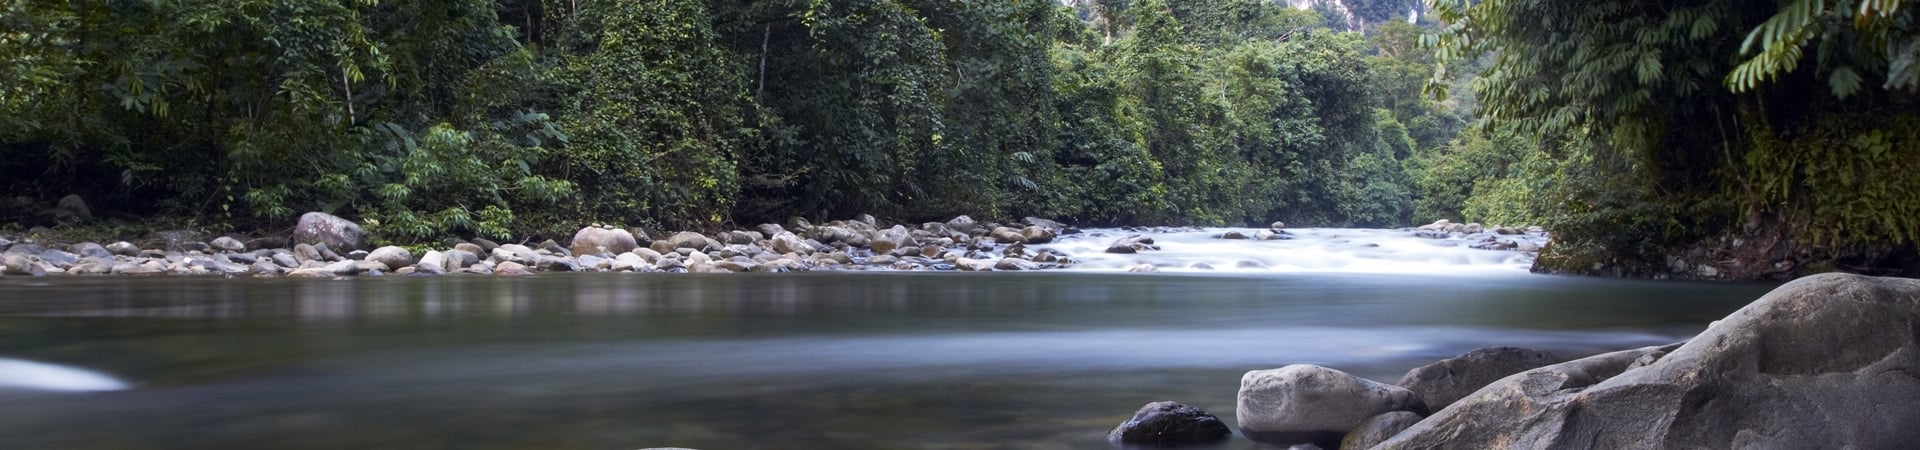 World Heritage Sites of Borneo, Mulu and Kinabalu National Parks